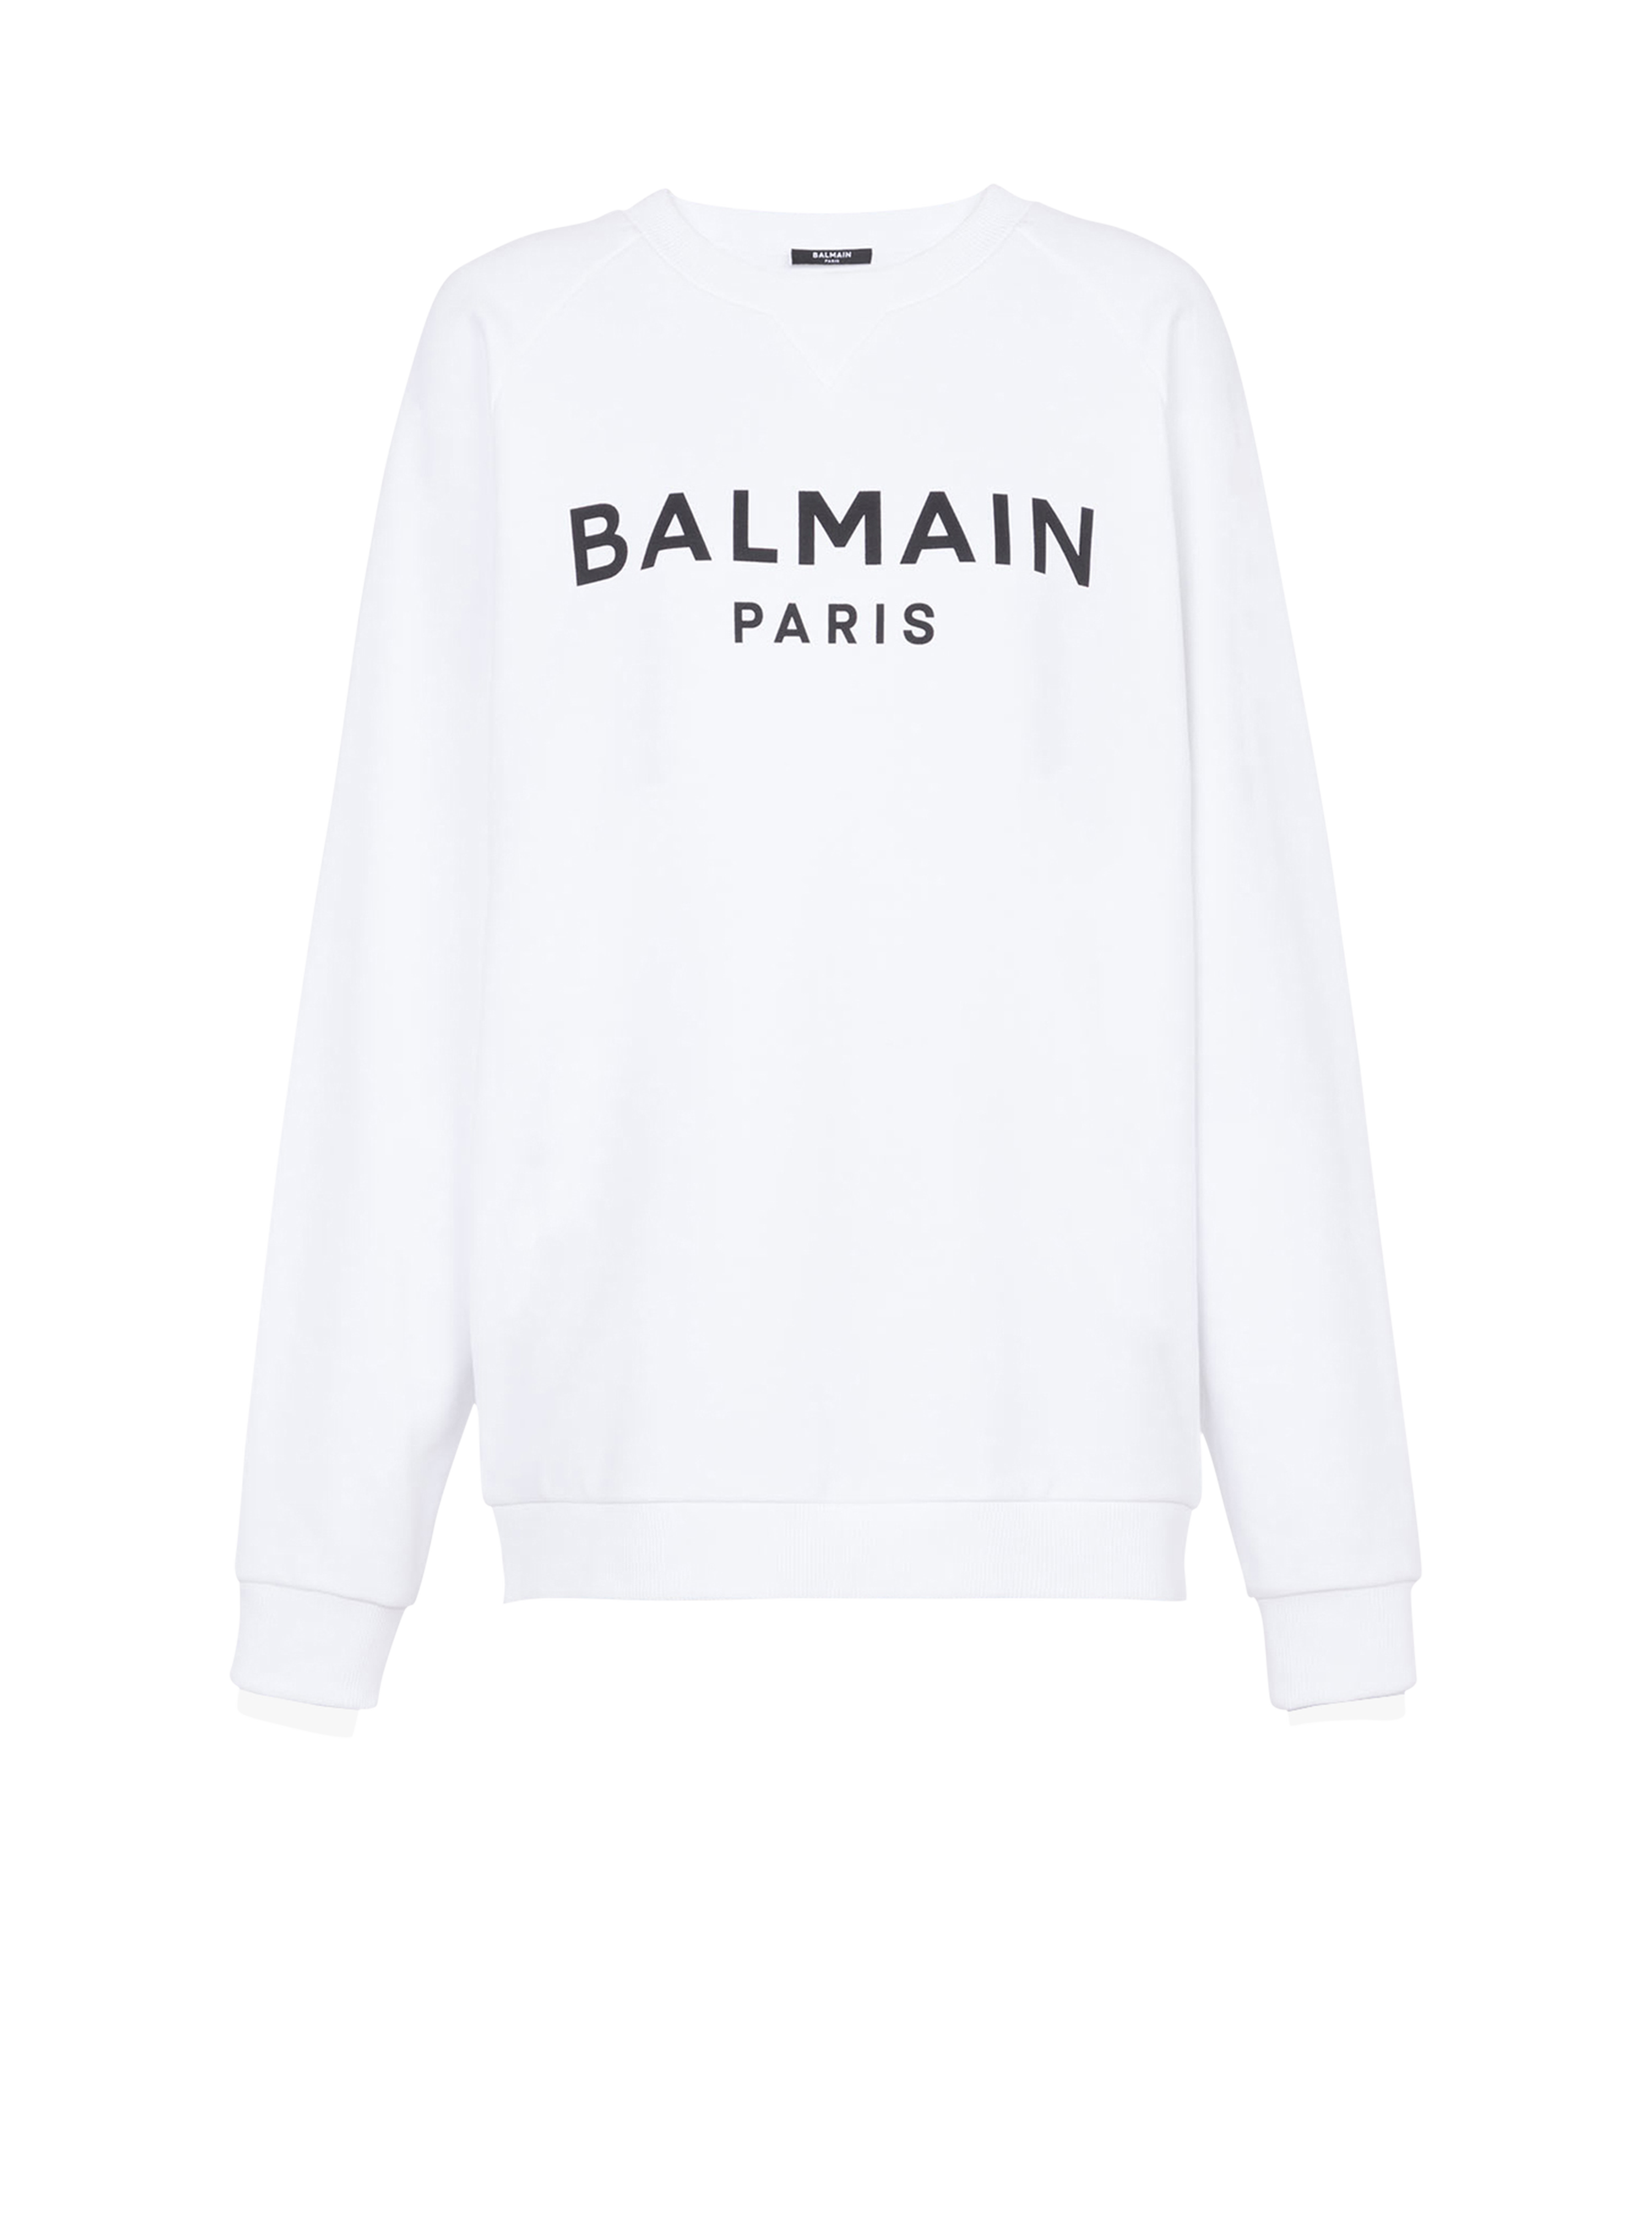 Felpa in cotone con logo Balmain, bianco